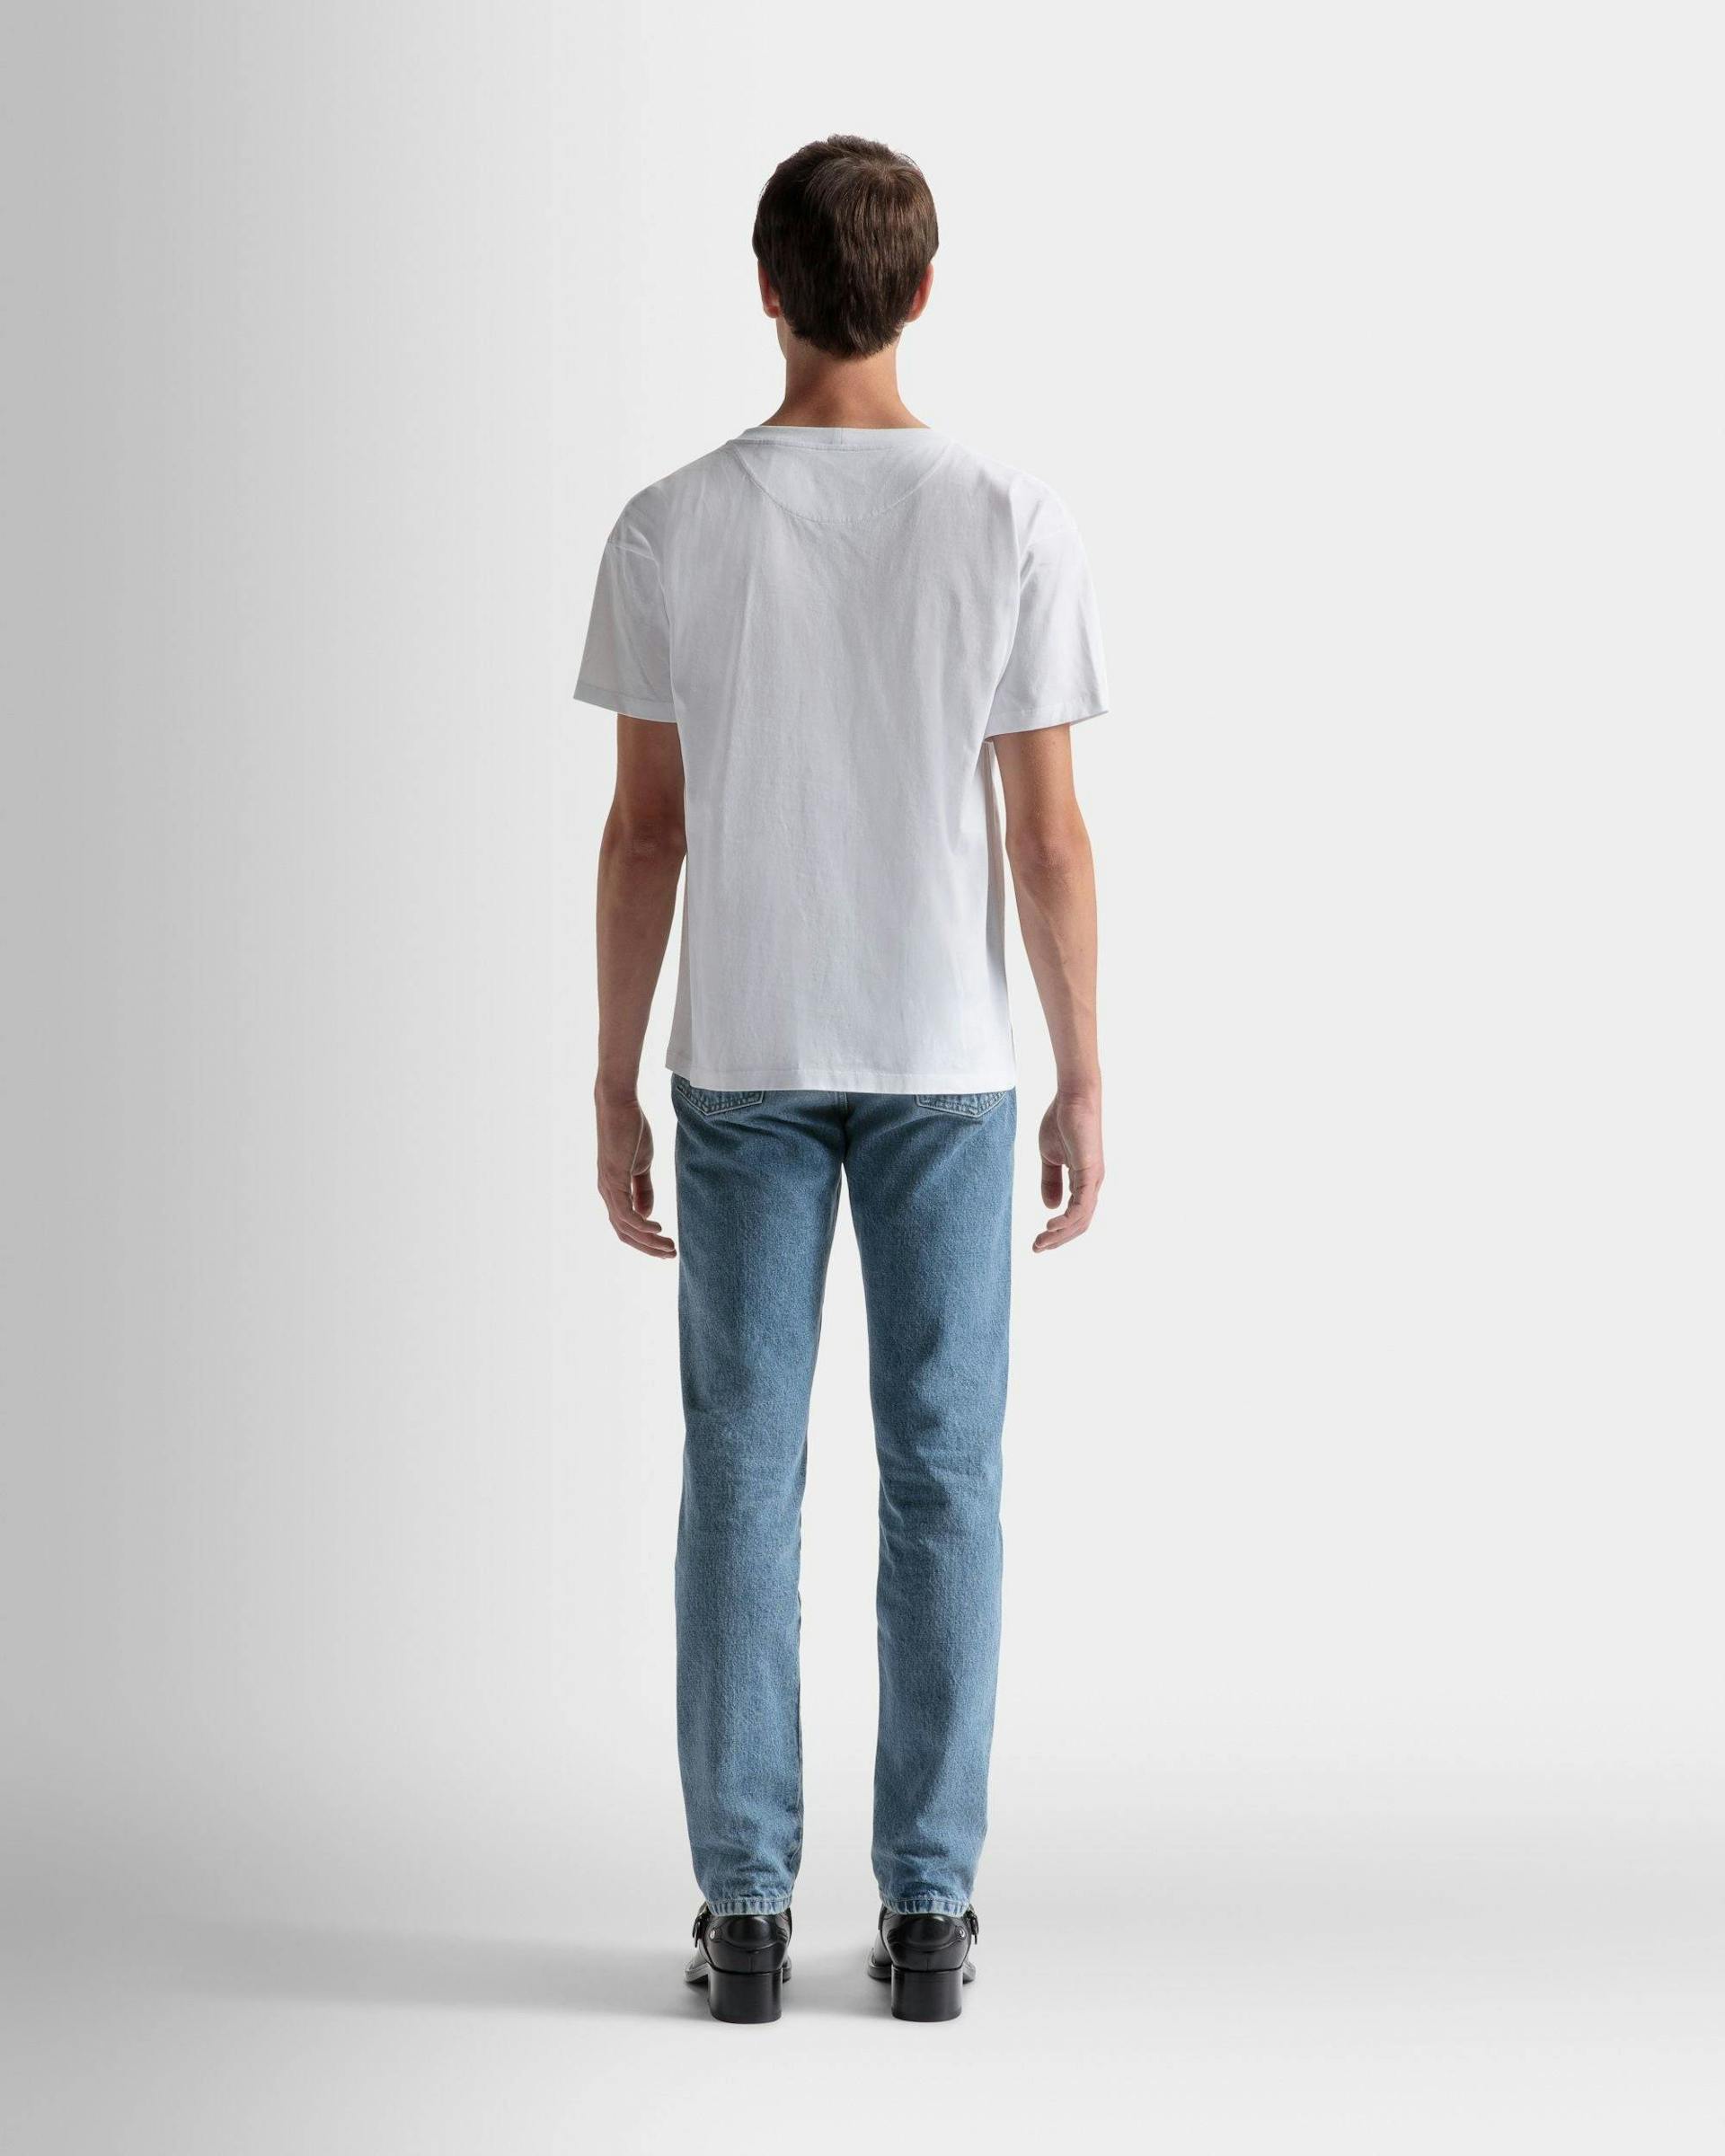 ロゴ Tシャツ ホワイト コットン - 男性 - Bally - 06